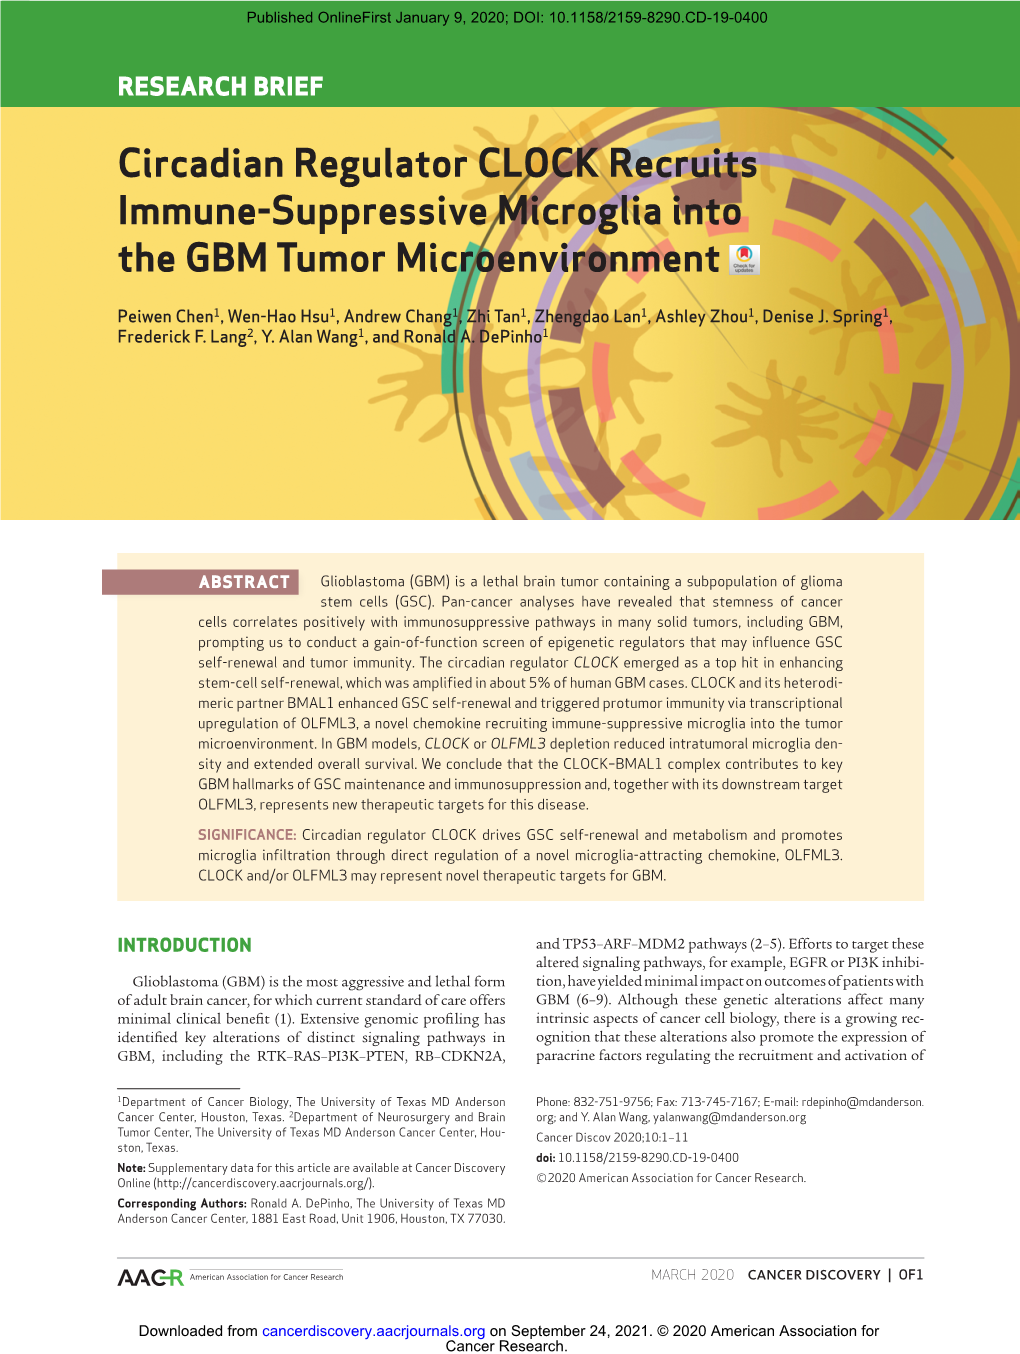 Circadian Regulator CLOCK Recruits Immune-Suppressive Microglia Into the GBM Tumor Microenvironment